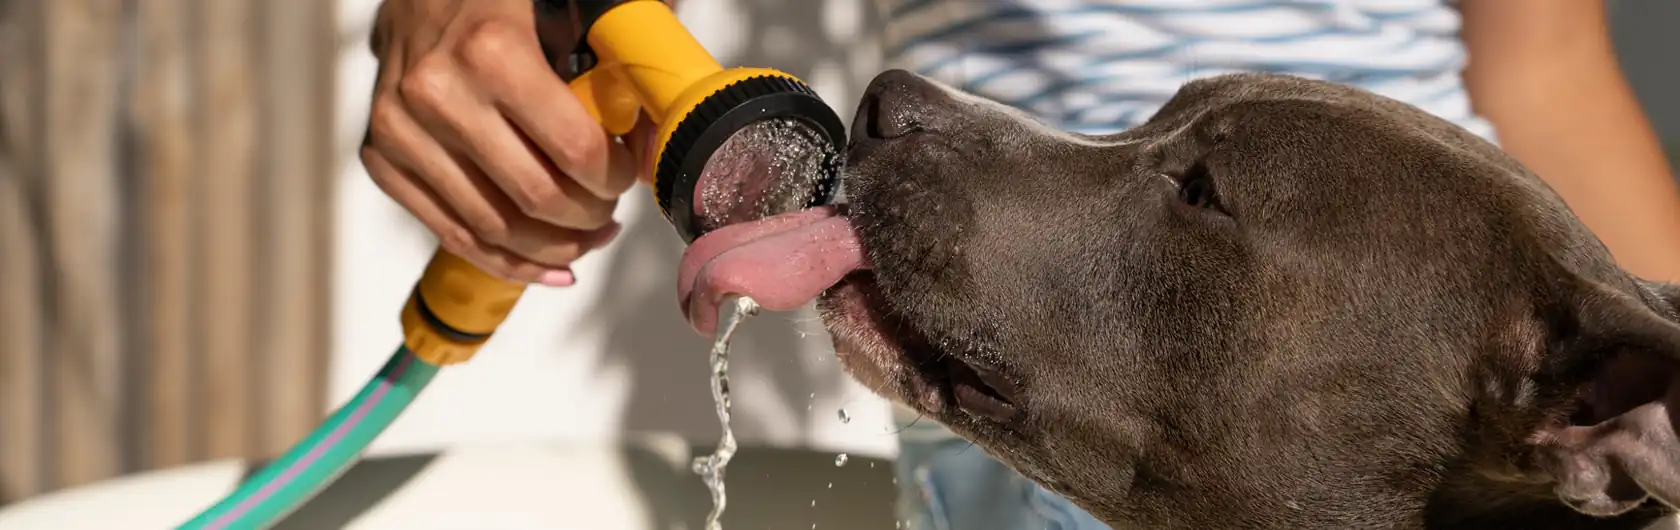 Cómo Cuidar a tu Compañero Canino en el Calor y alimento para perros de calidad nutribon